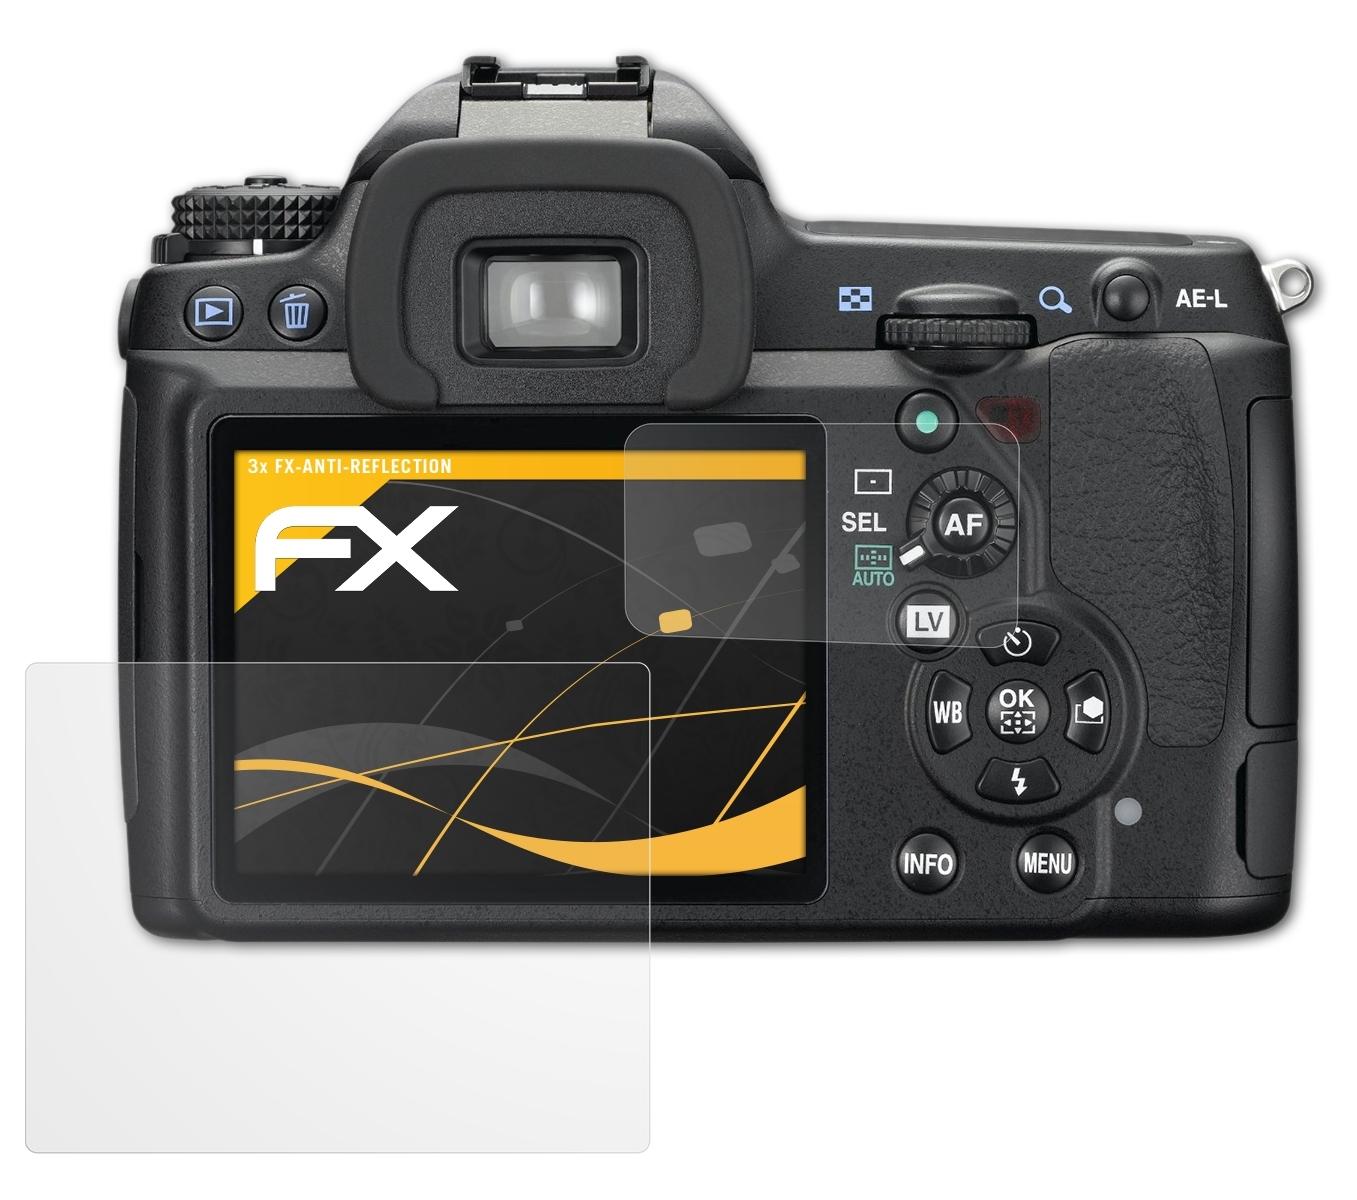 Pentax ATFOLIX K-7) FX-Antireflex 3x Displayschutz(für